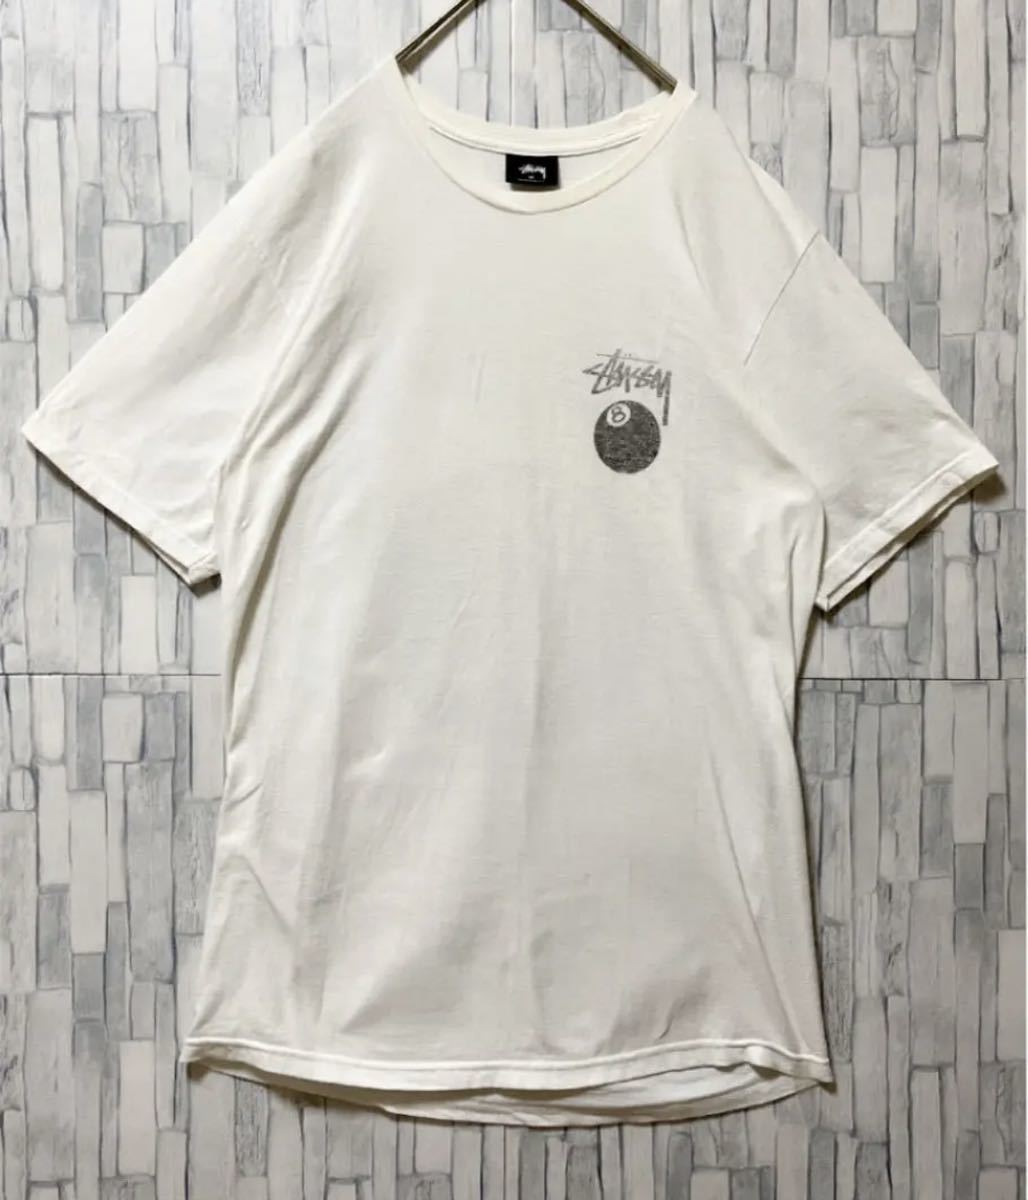 stussy ステューシー 半袖 Tシャツ ビッグロゴ デカロゴ サイズM ホワイト 8ボール エイトボール メキシコ製 両面プリント 送料無料